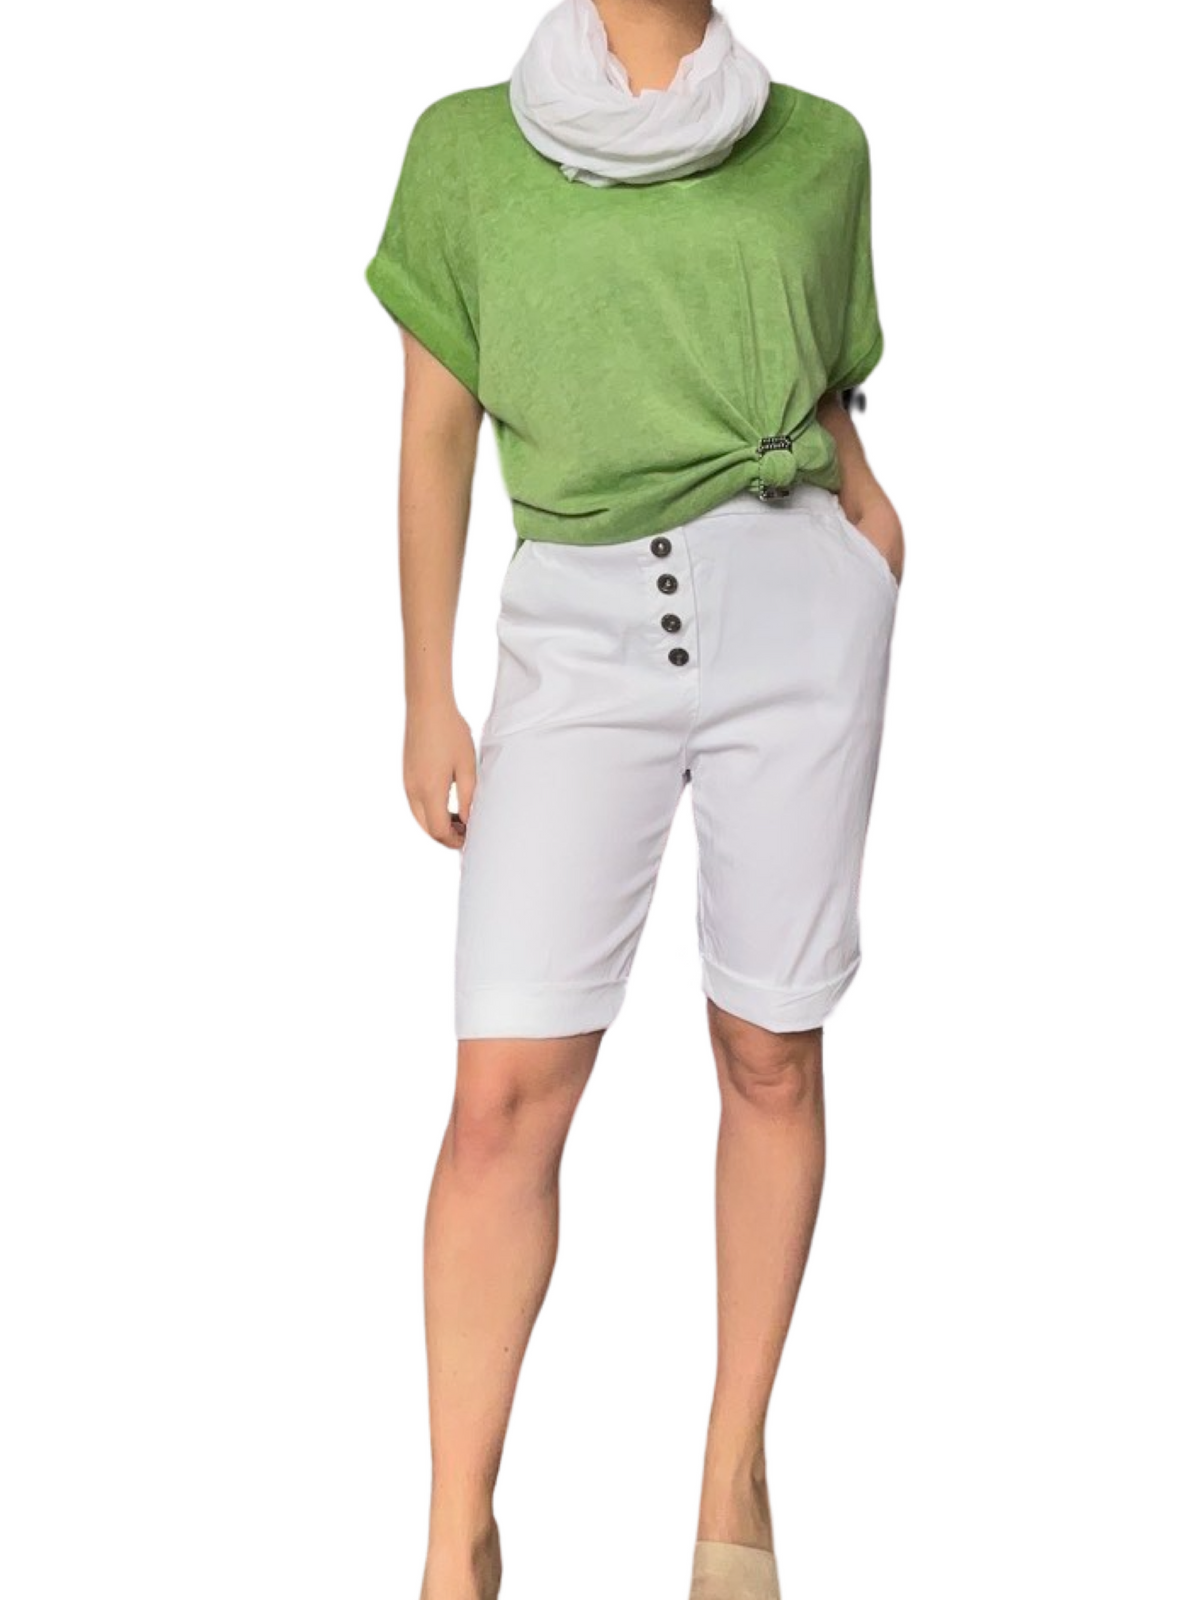 T-shirt pour femme vert uni avec short long.